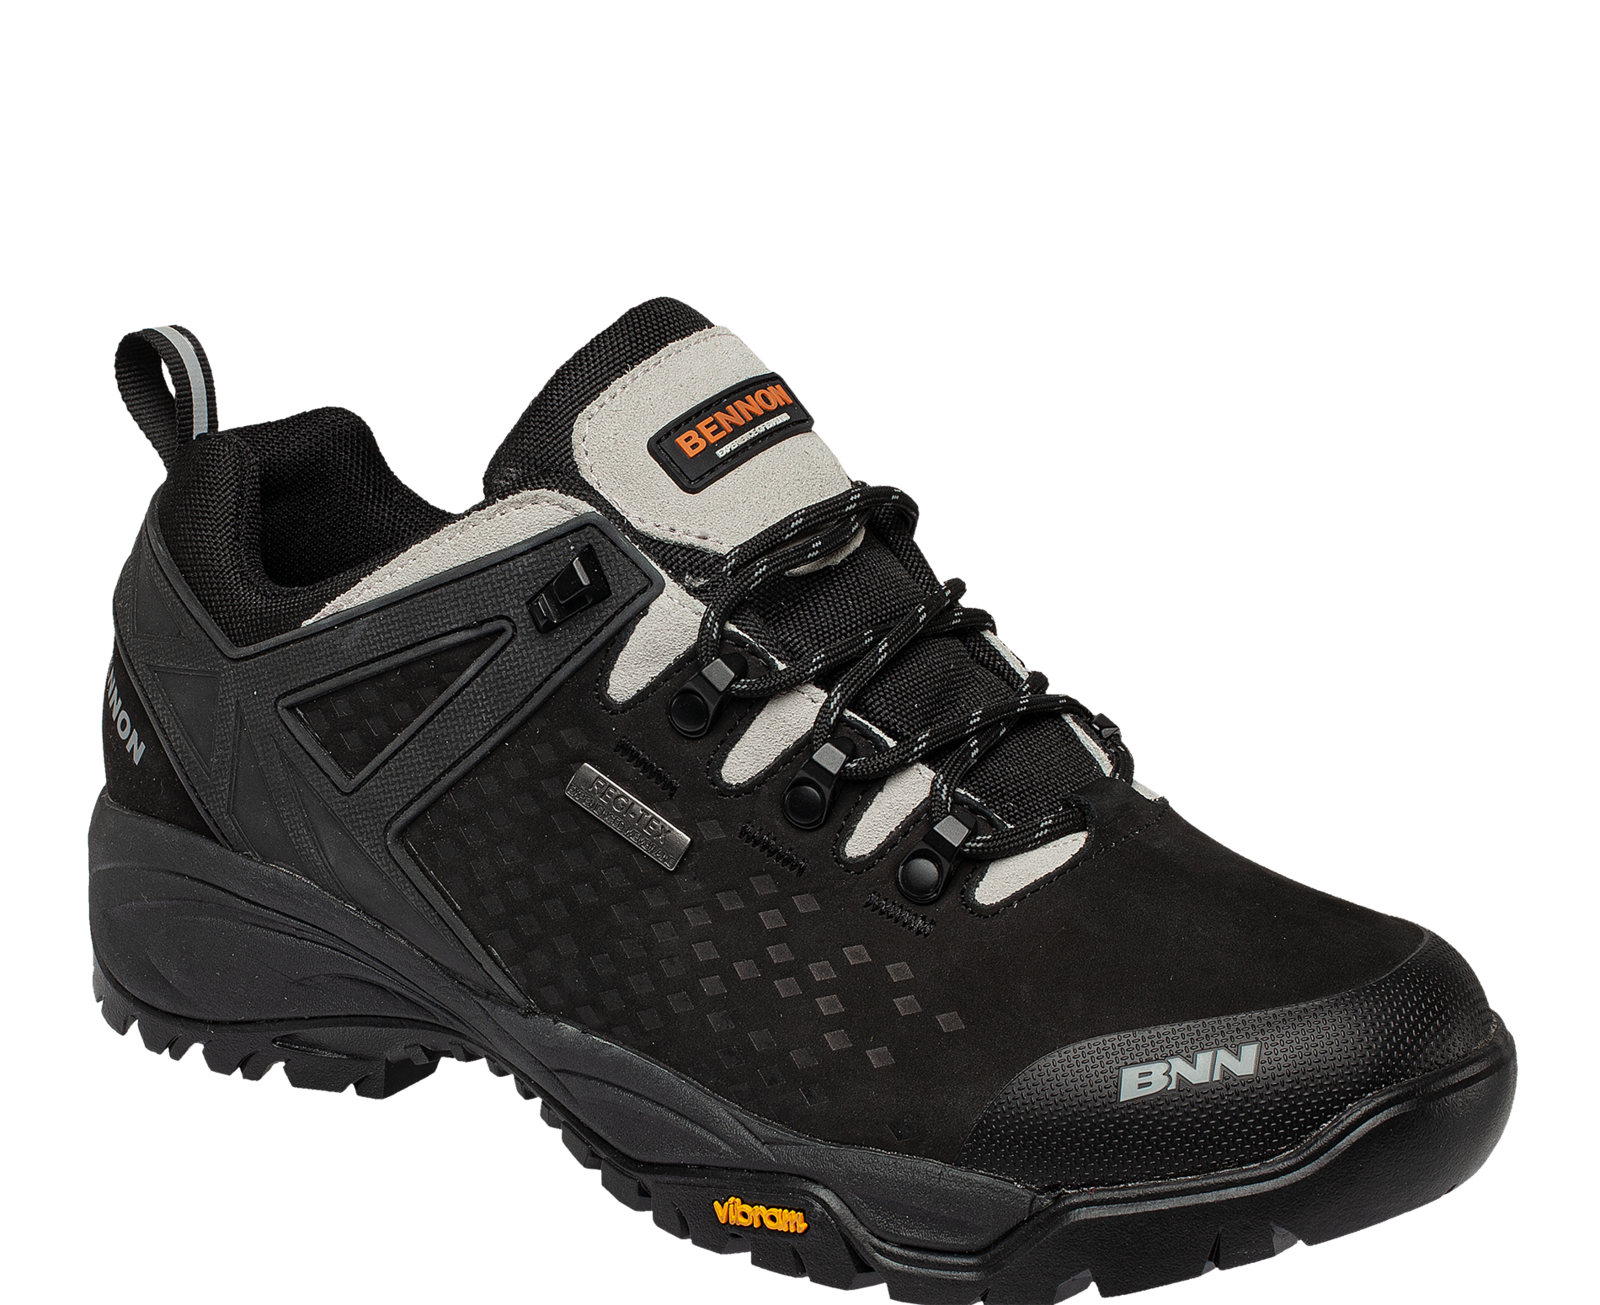 Outdoorová obuv Bennon Recado XTR O2 s membránou - veľkosť: 37, farba: čierna